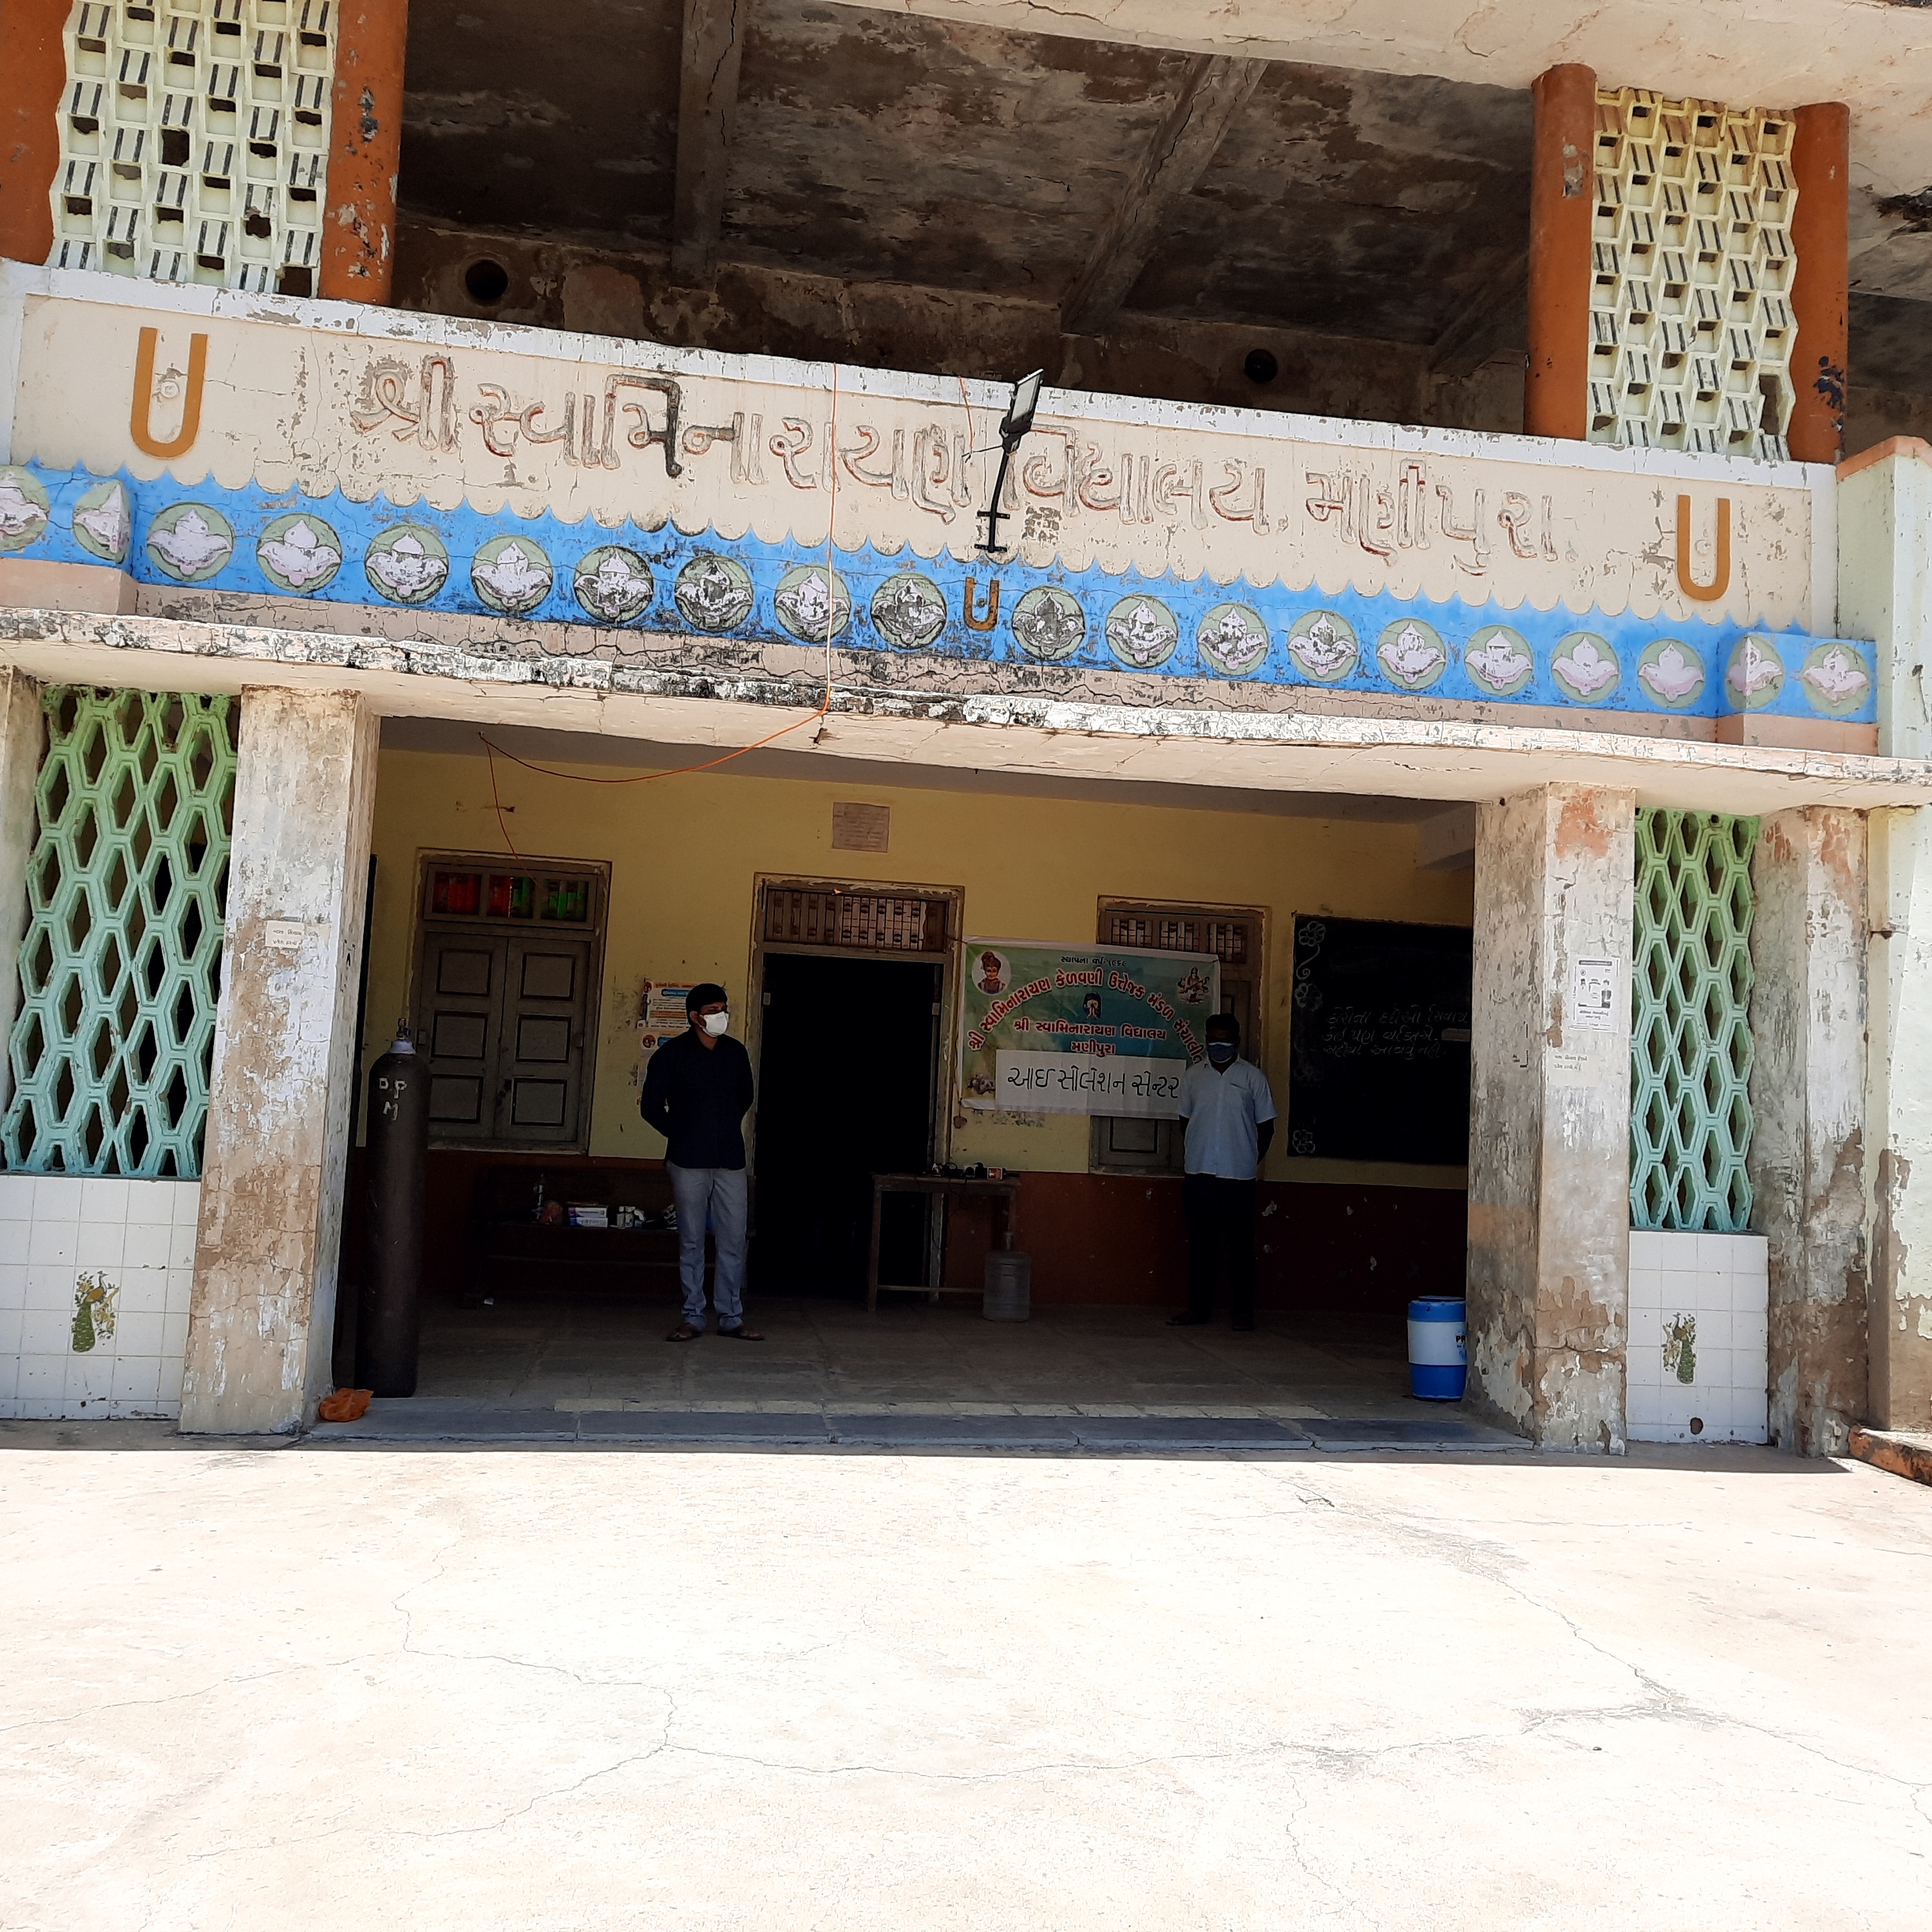 મણિપુરા શ્રી સ્વામિનારાયણ વિદ્યાલયમાં 15 બેડનું નિ:શુલ્ક આઈસોલેશન સેન્ટર શરૂ કરાયું